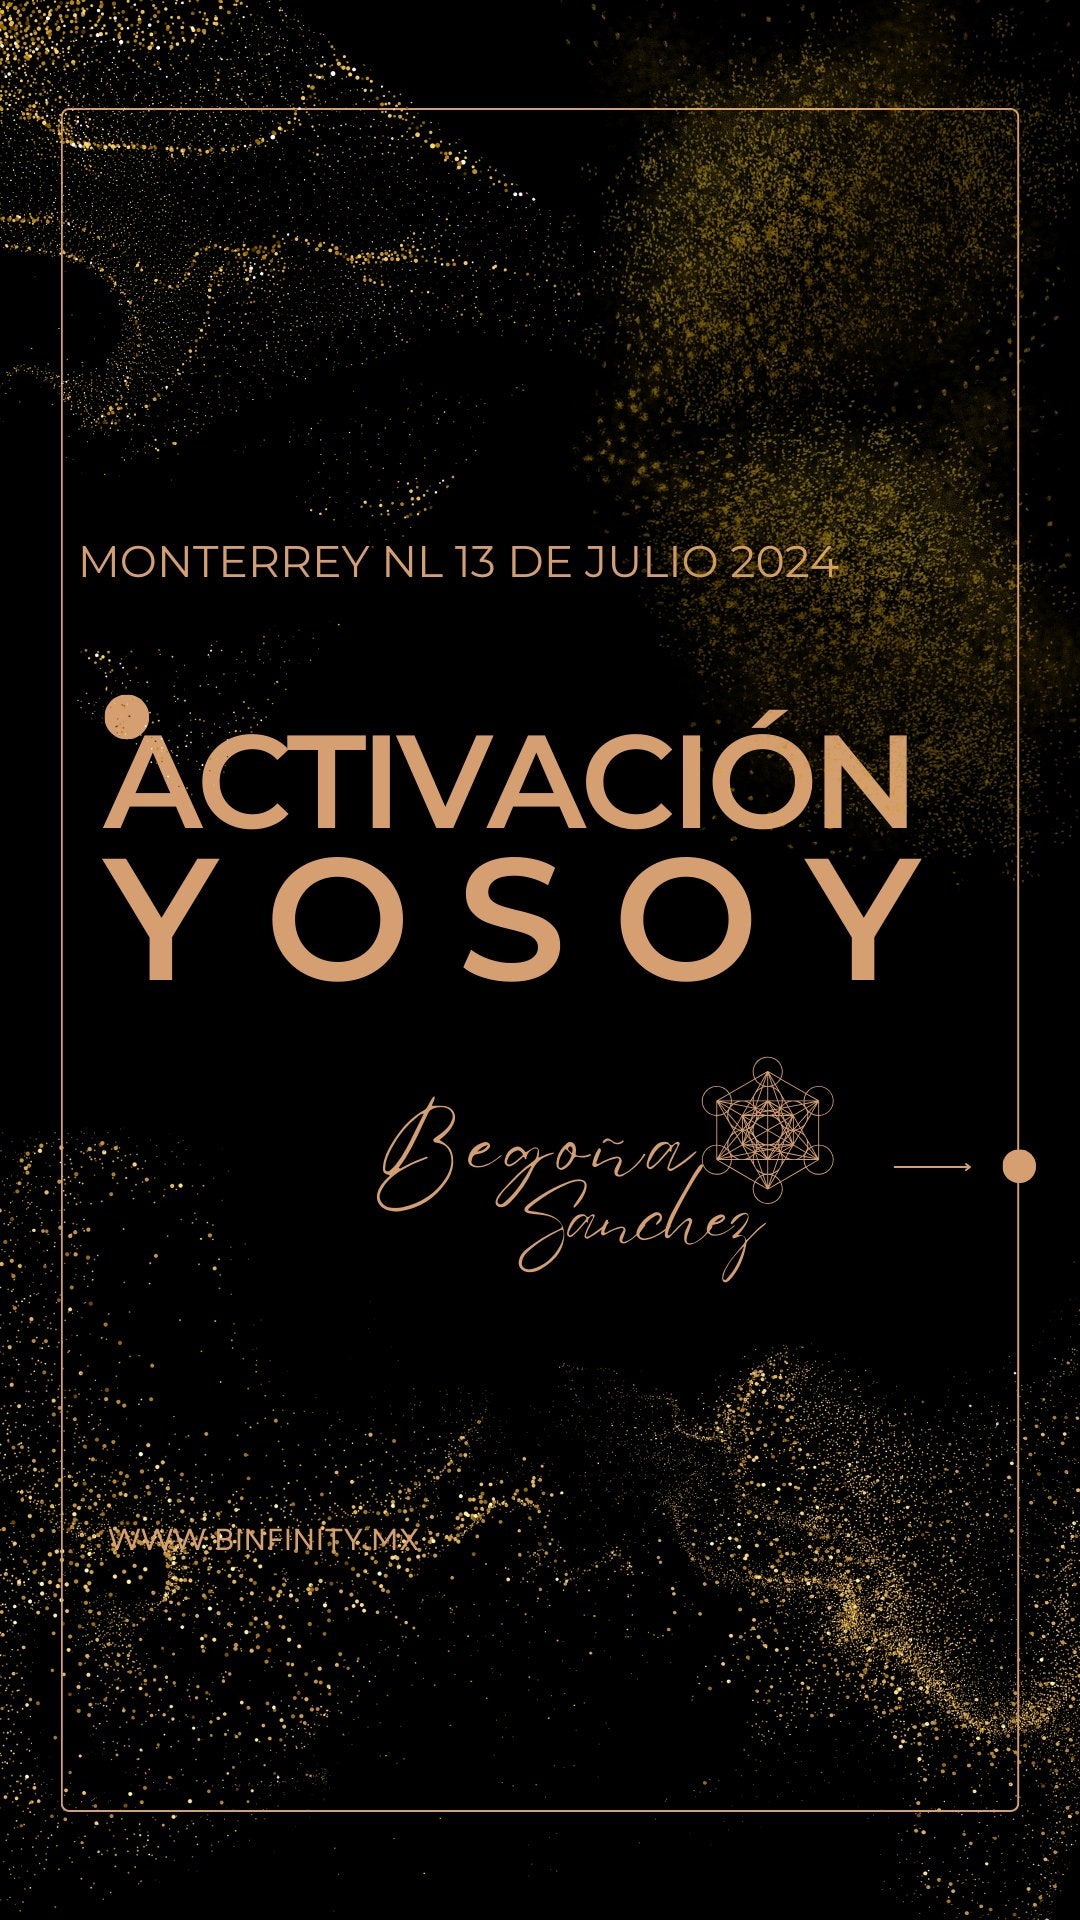 Activación YOSOY - Por el mundo